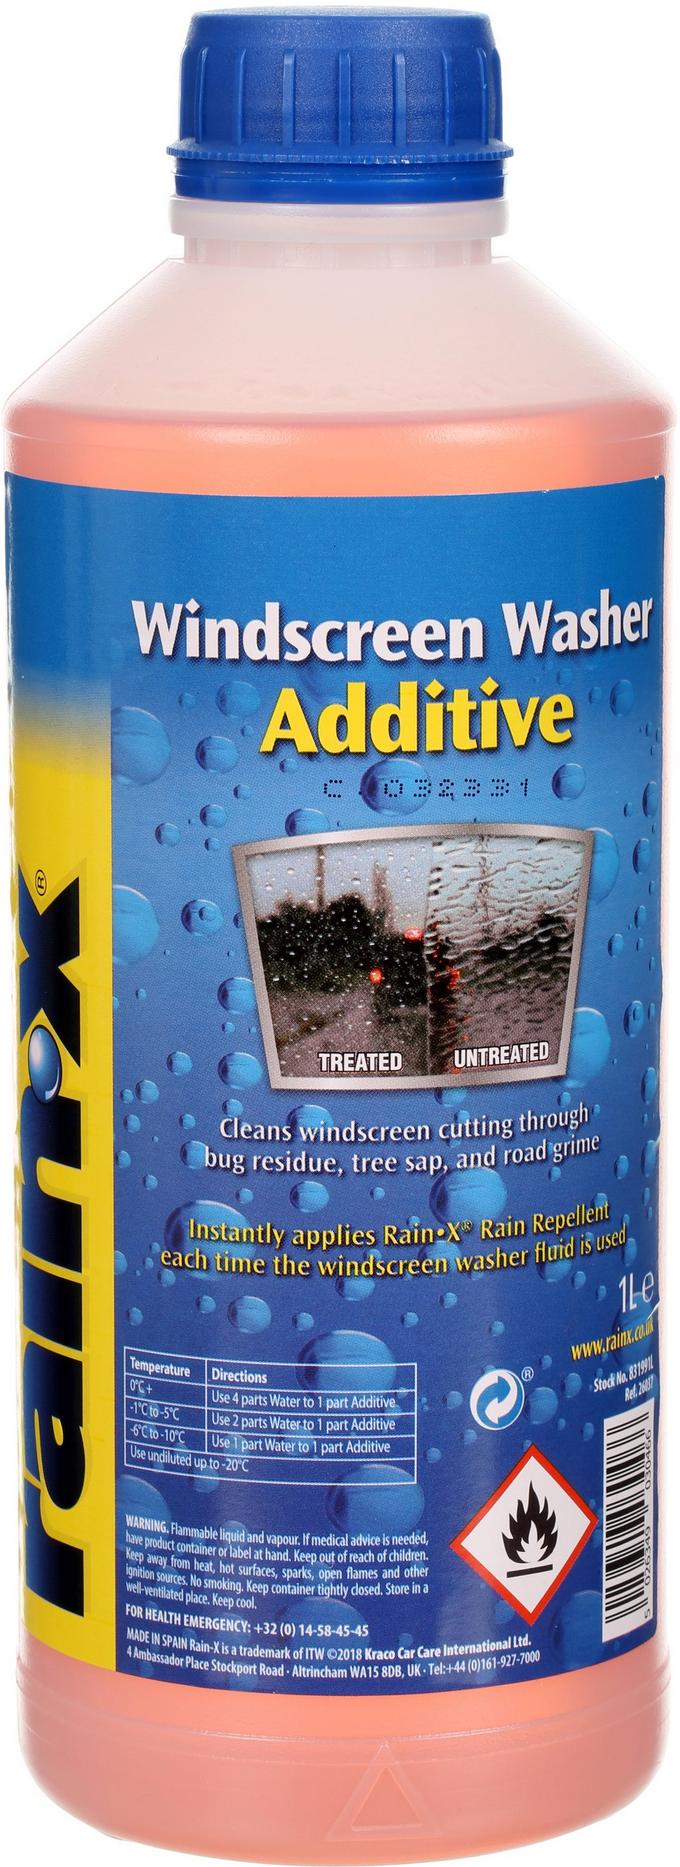 Rain-x Windshield Washer Fluid